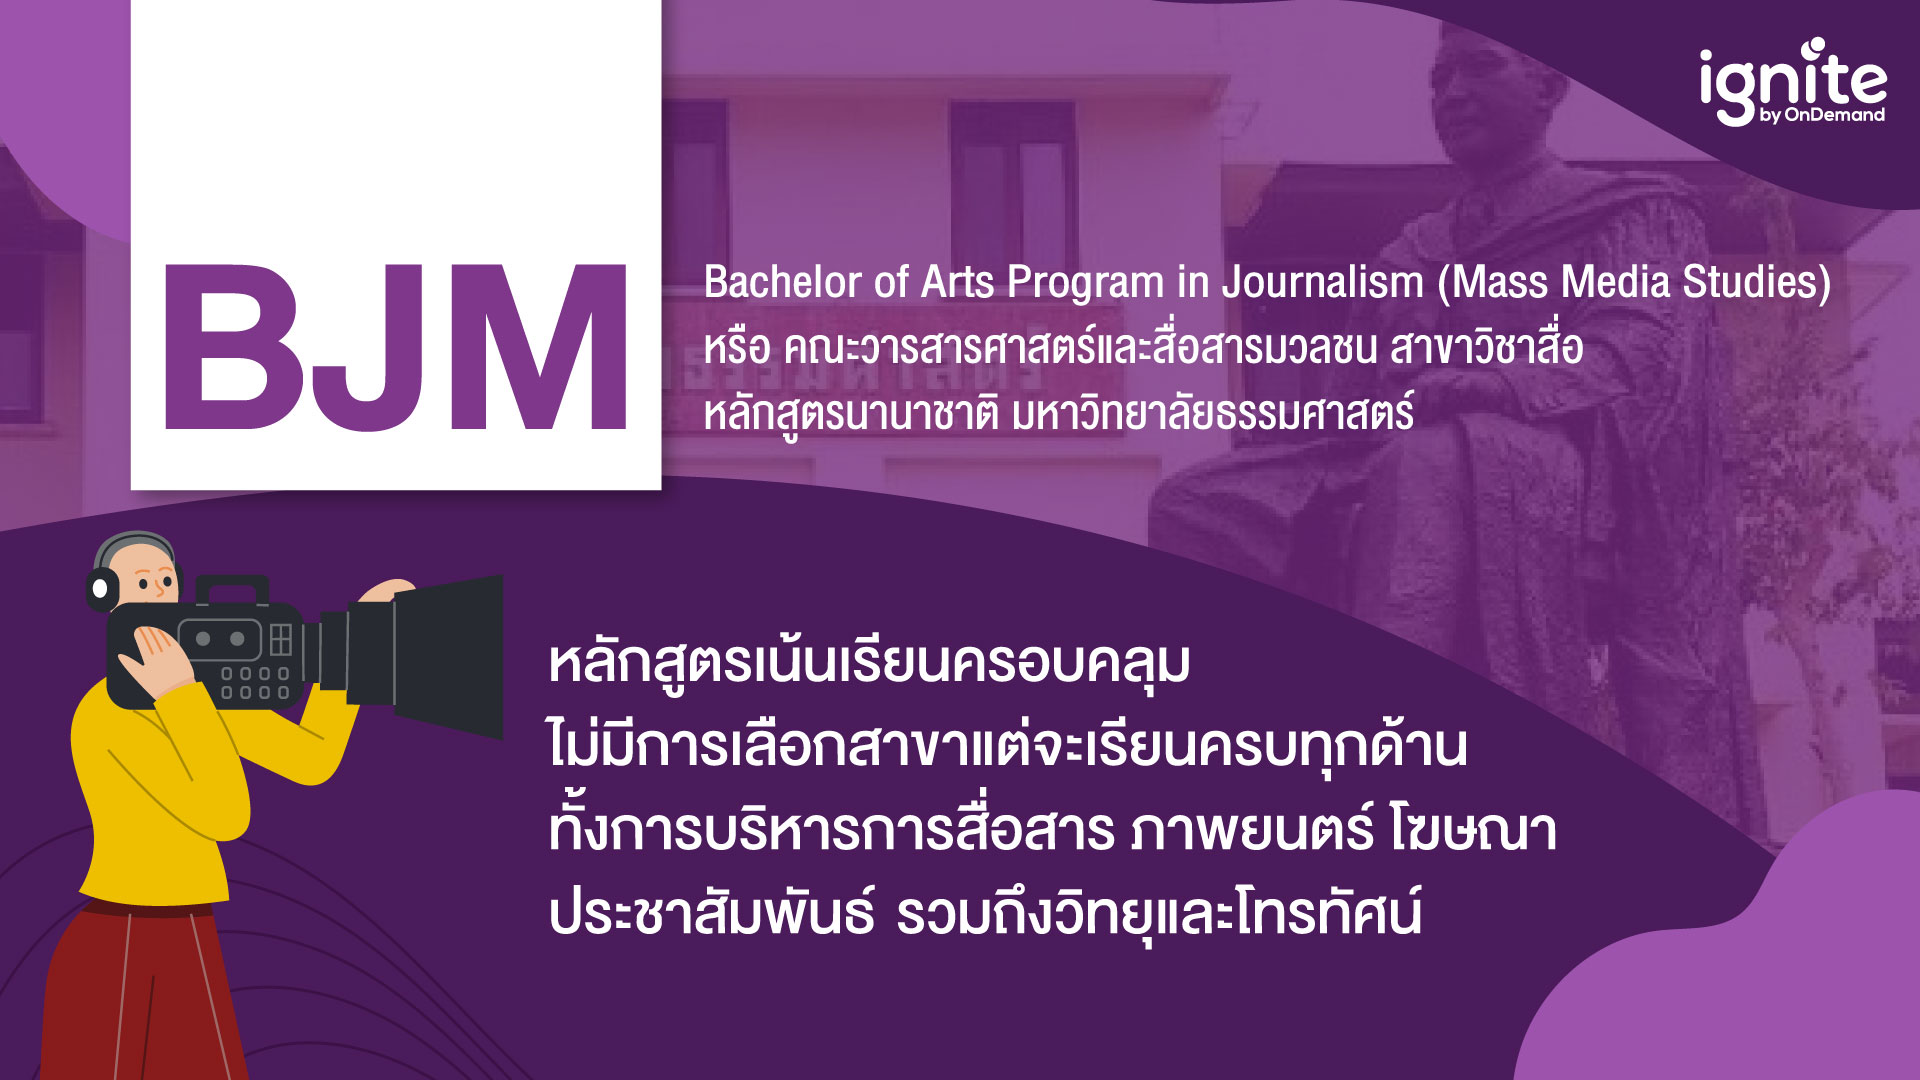 คณะ BJM คือ - Bachelor of Arts Program in Journalism - Bigcover2